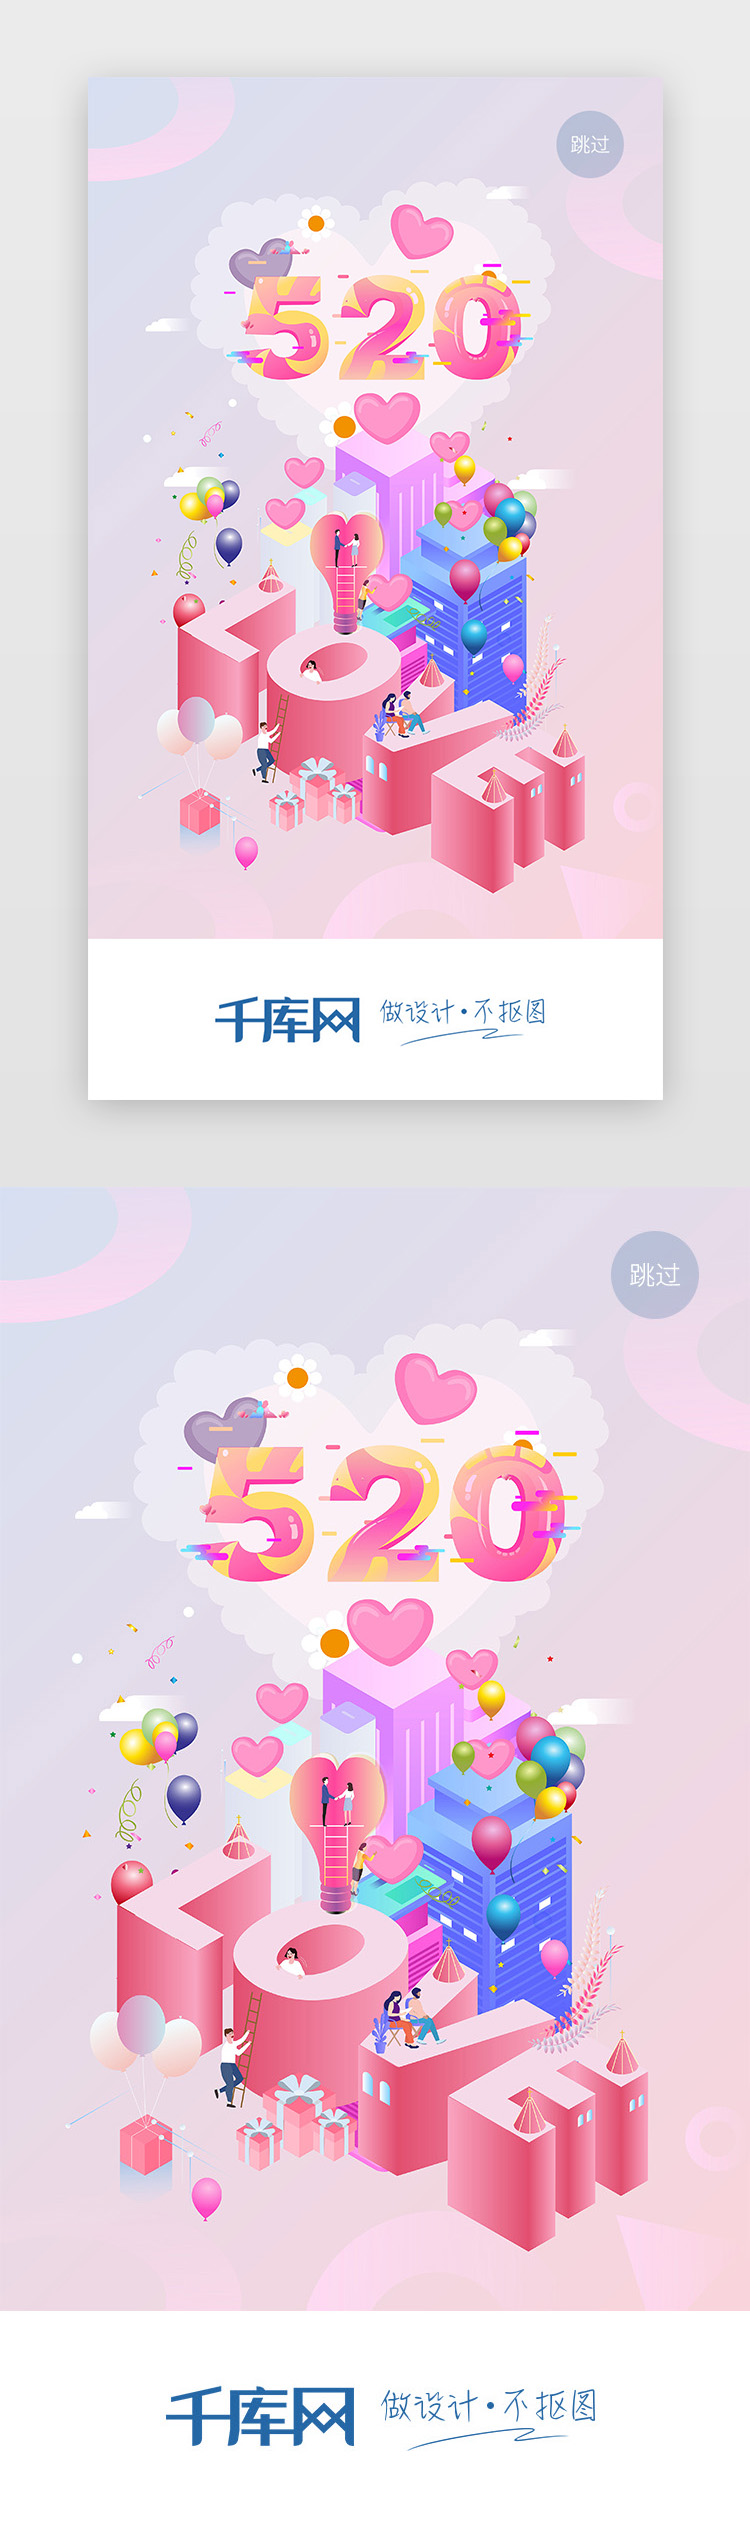 粉色2.5D插画520情人节主题闪屏启动页引导页图片